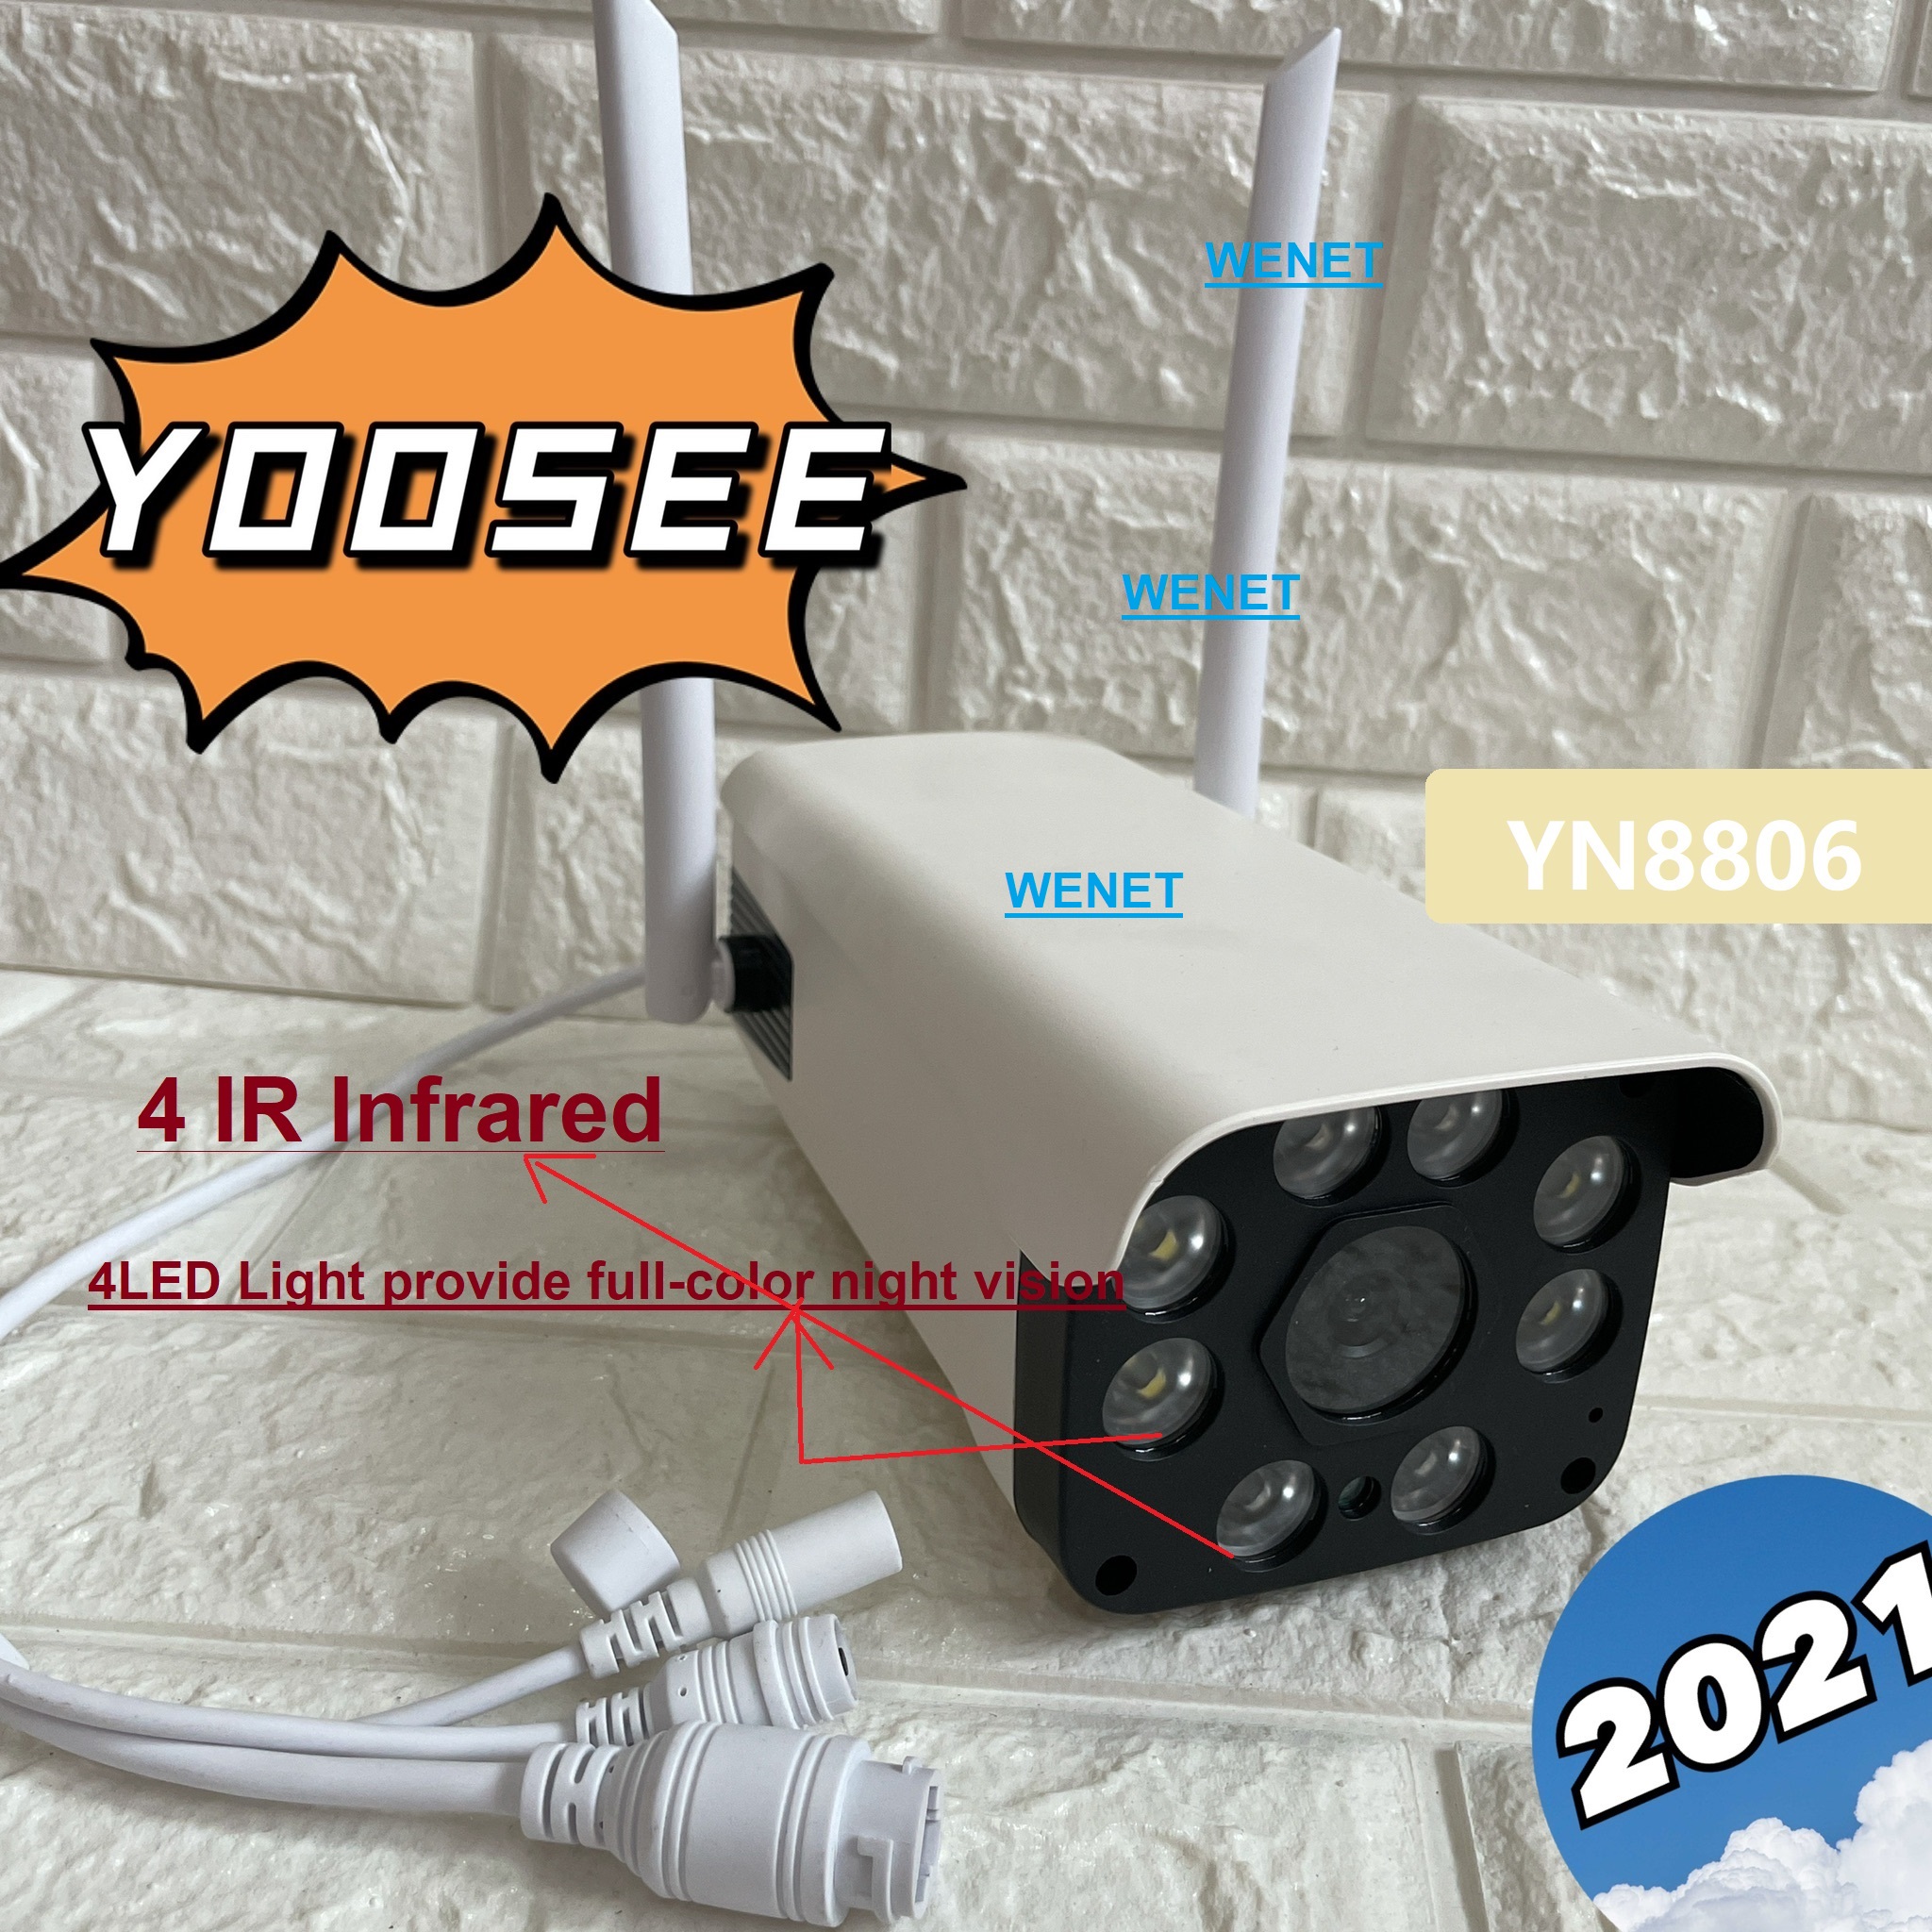 2021 YOOSEE YN-8806(GW206W) IR+White Lampคืนวิสัยทัศน์ กล้องวงจรปิด WiFi IP Camera 1080P 2.0ล้านพิกเซล